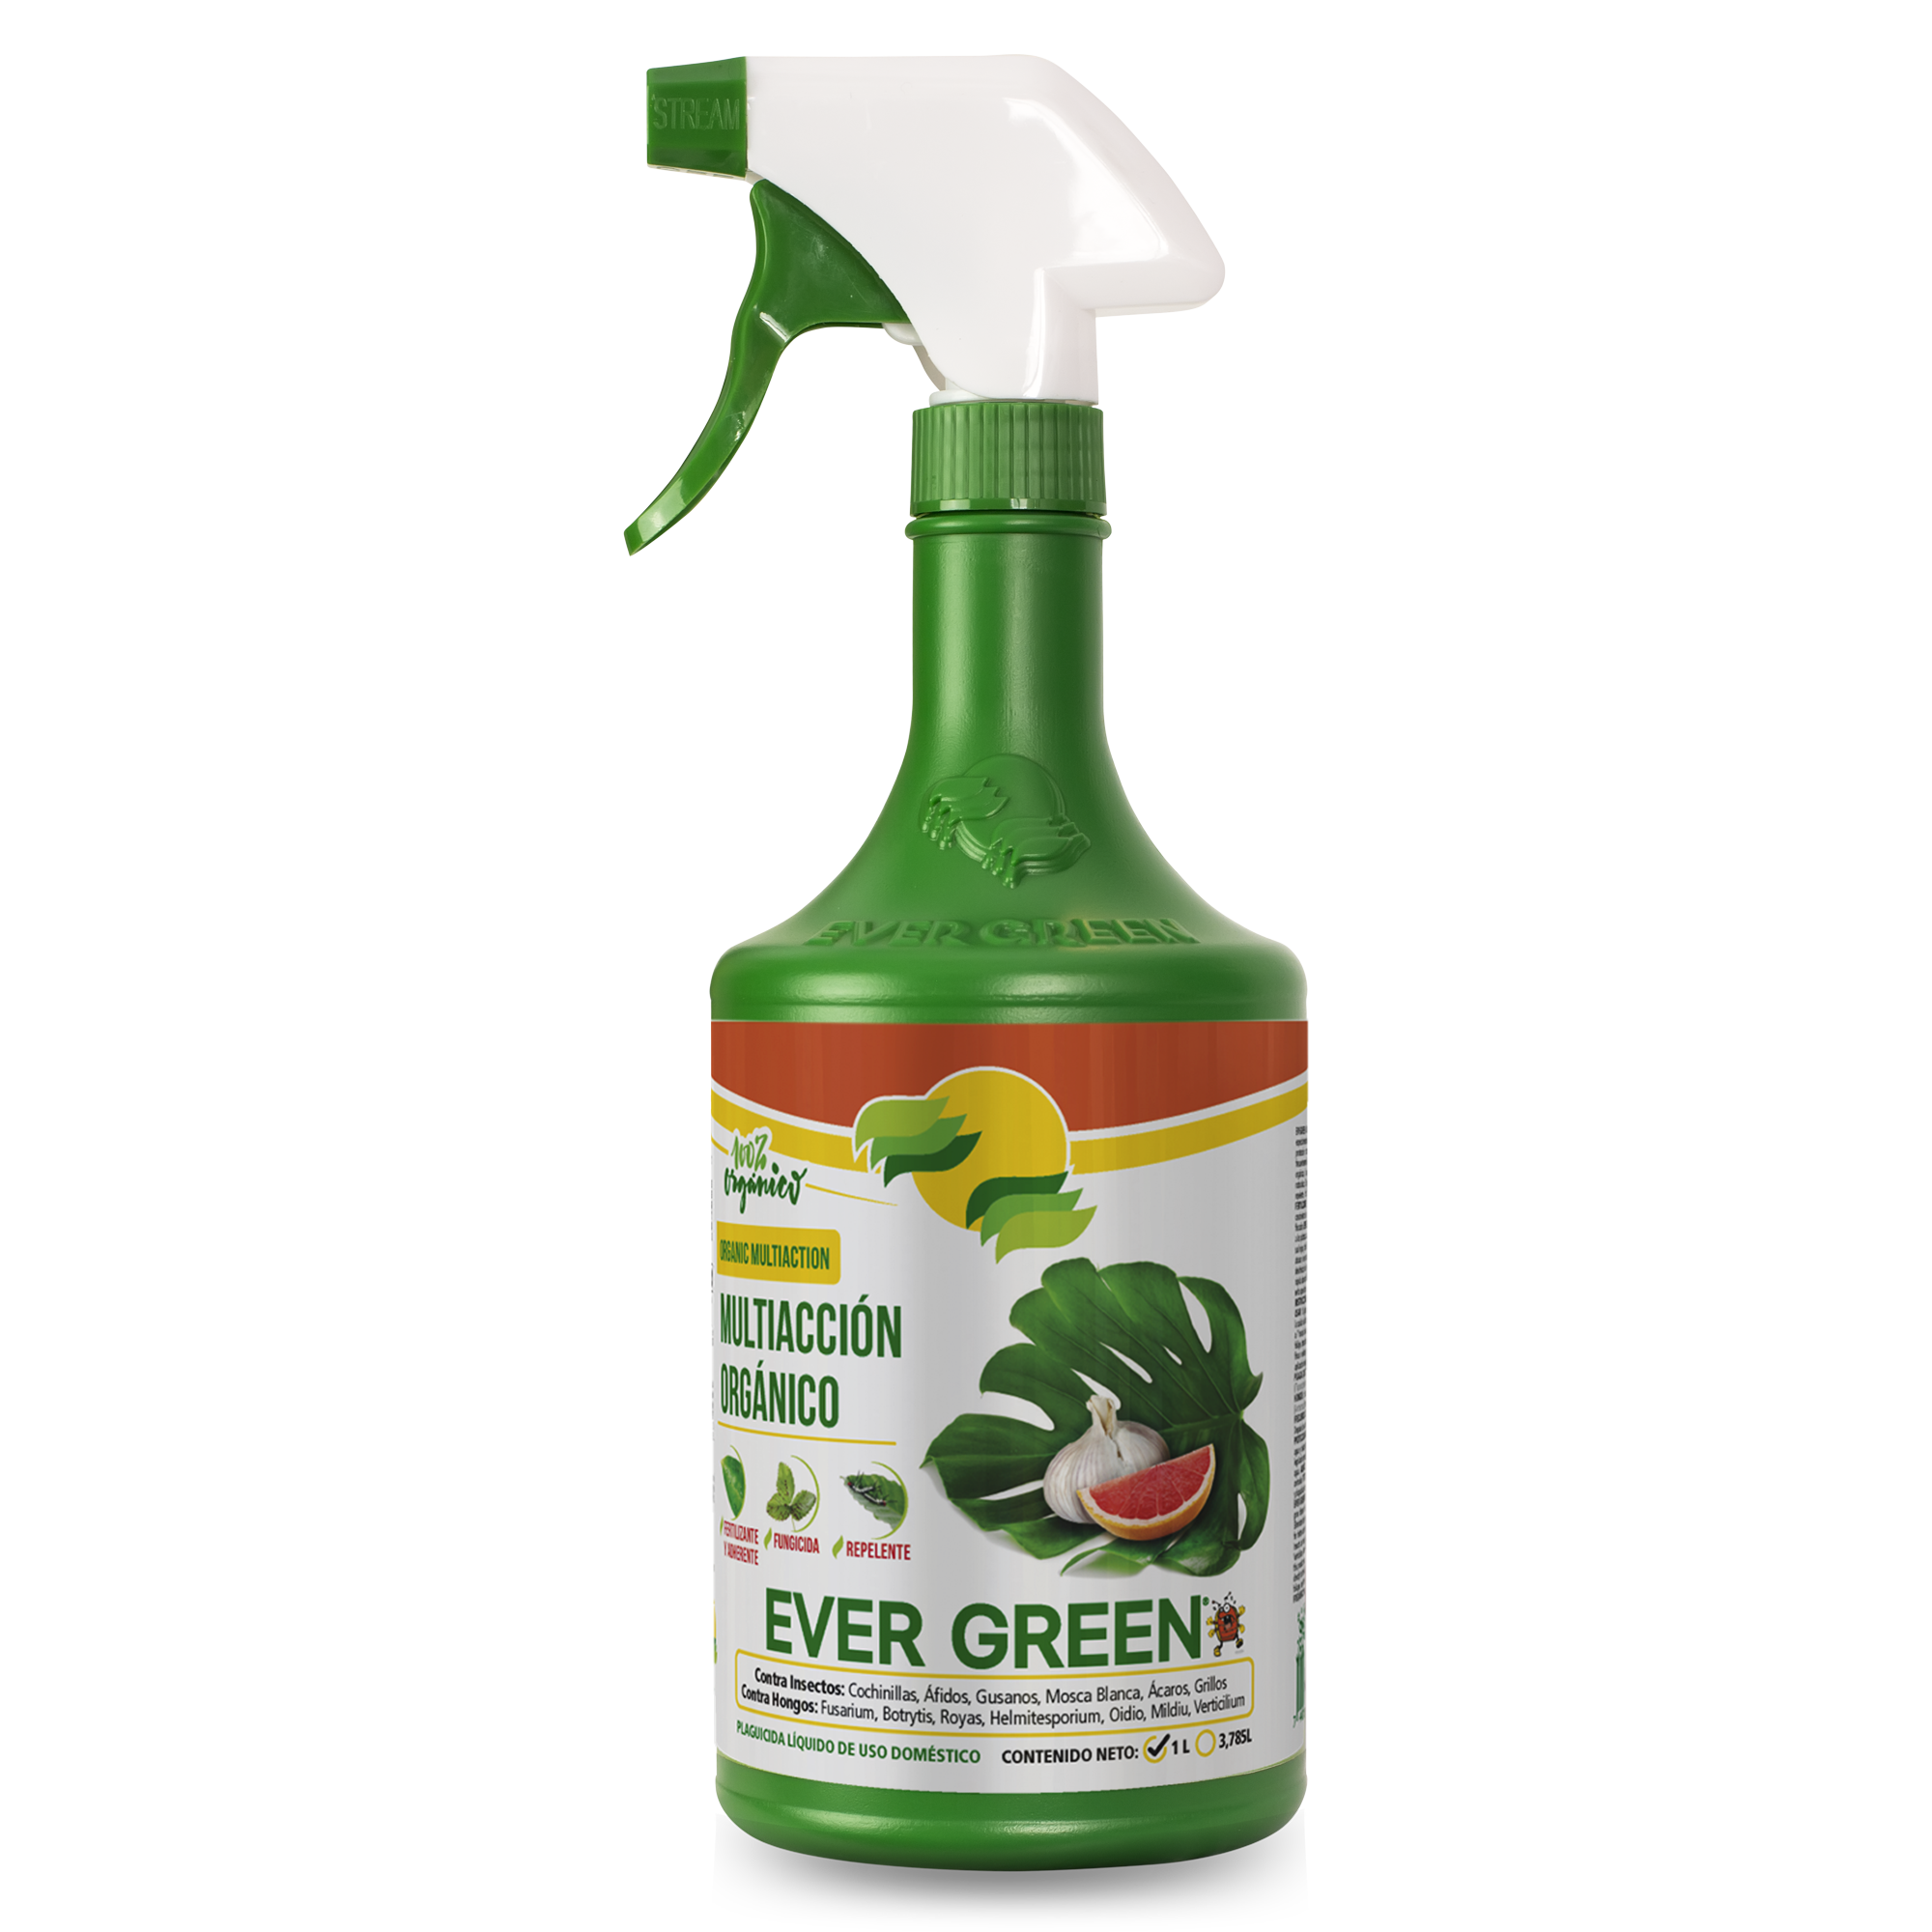 Ever Green Multiacción Orgánico | Evergreen CR